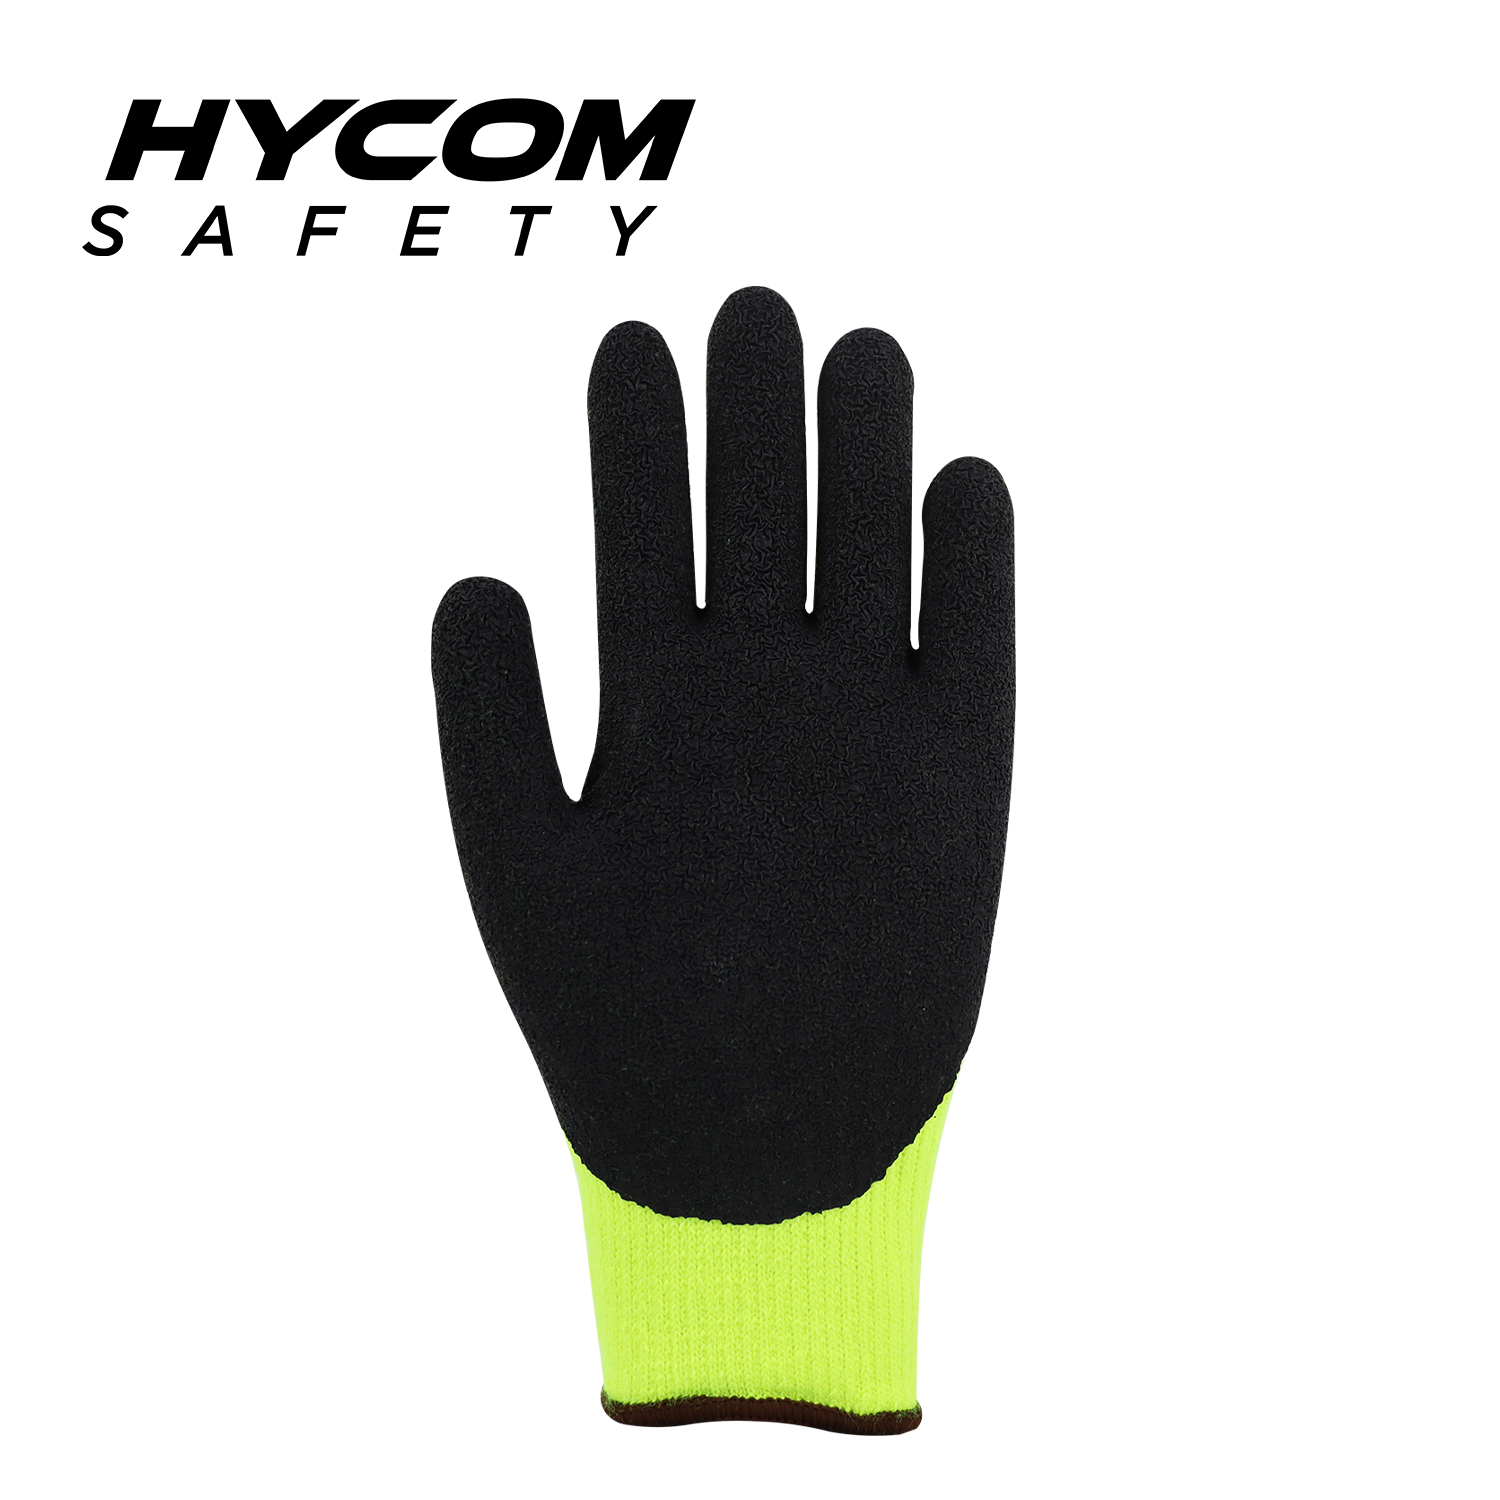 HYCOM 7G wärmerer Acryl-Handschuh mit Schaumlatex-Beschichtung, Fleece-Innenfutter, Thermo-Arbeitshandschuh